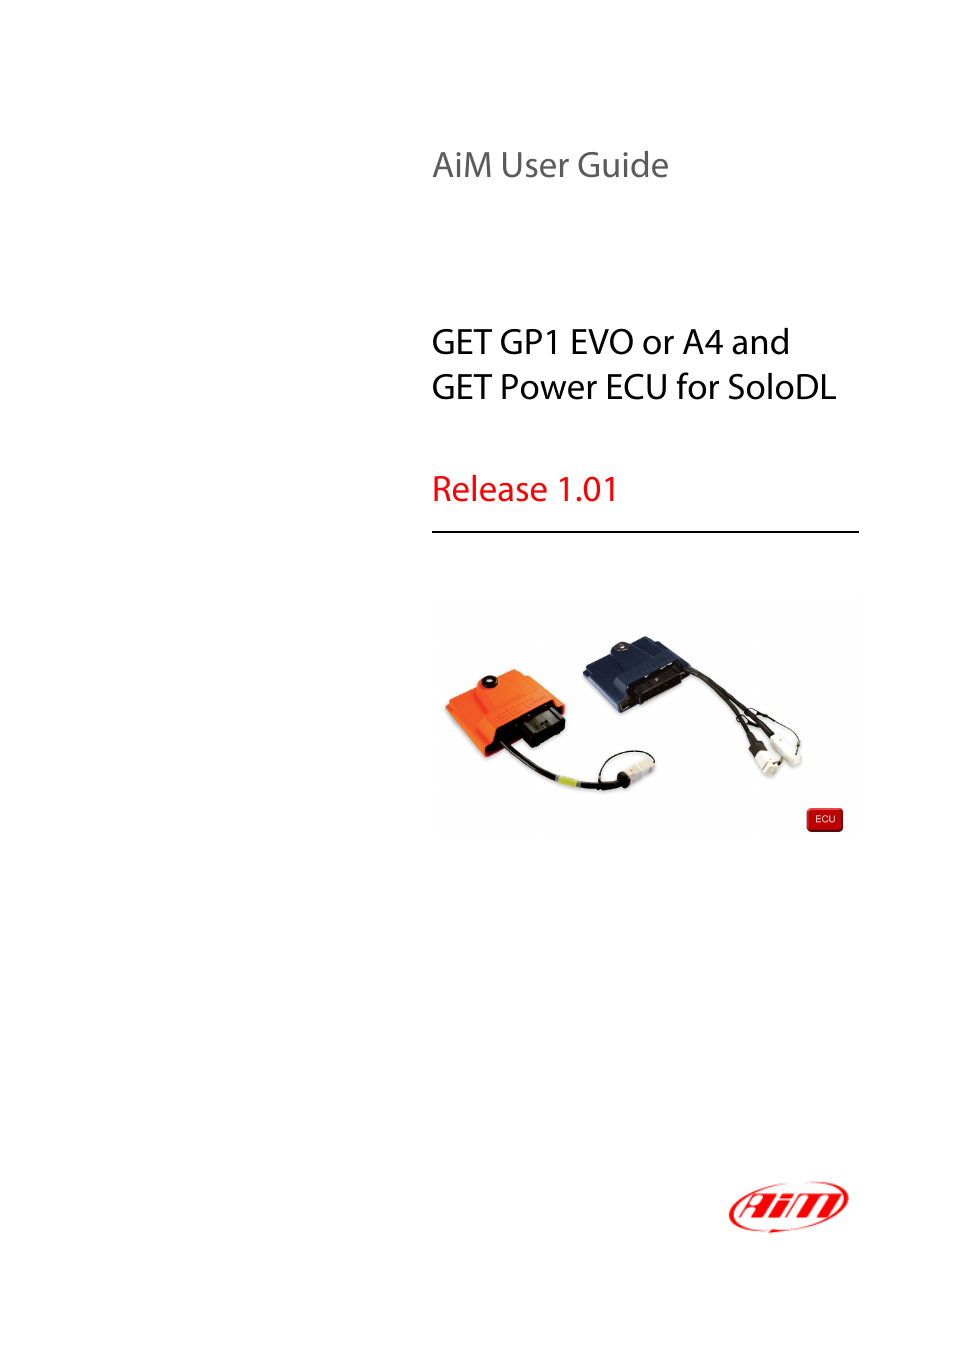 GET Power ECU for SoloDL